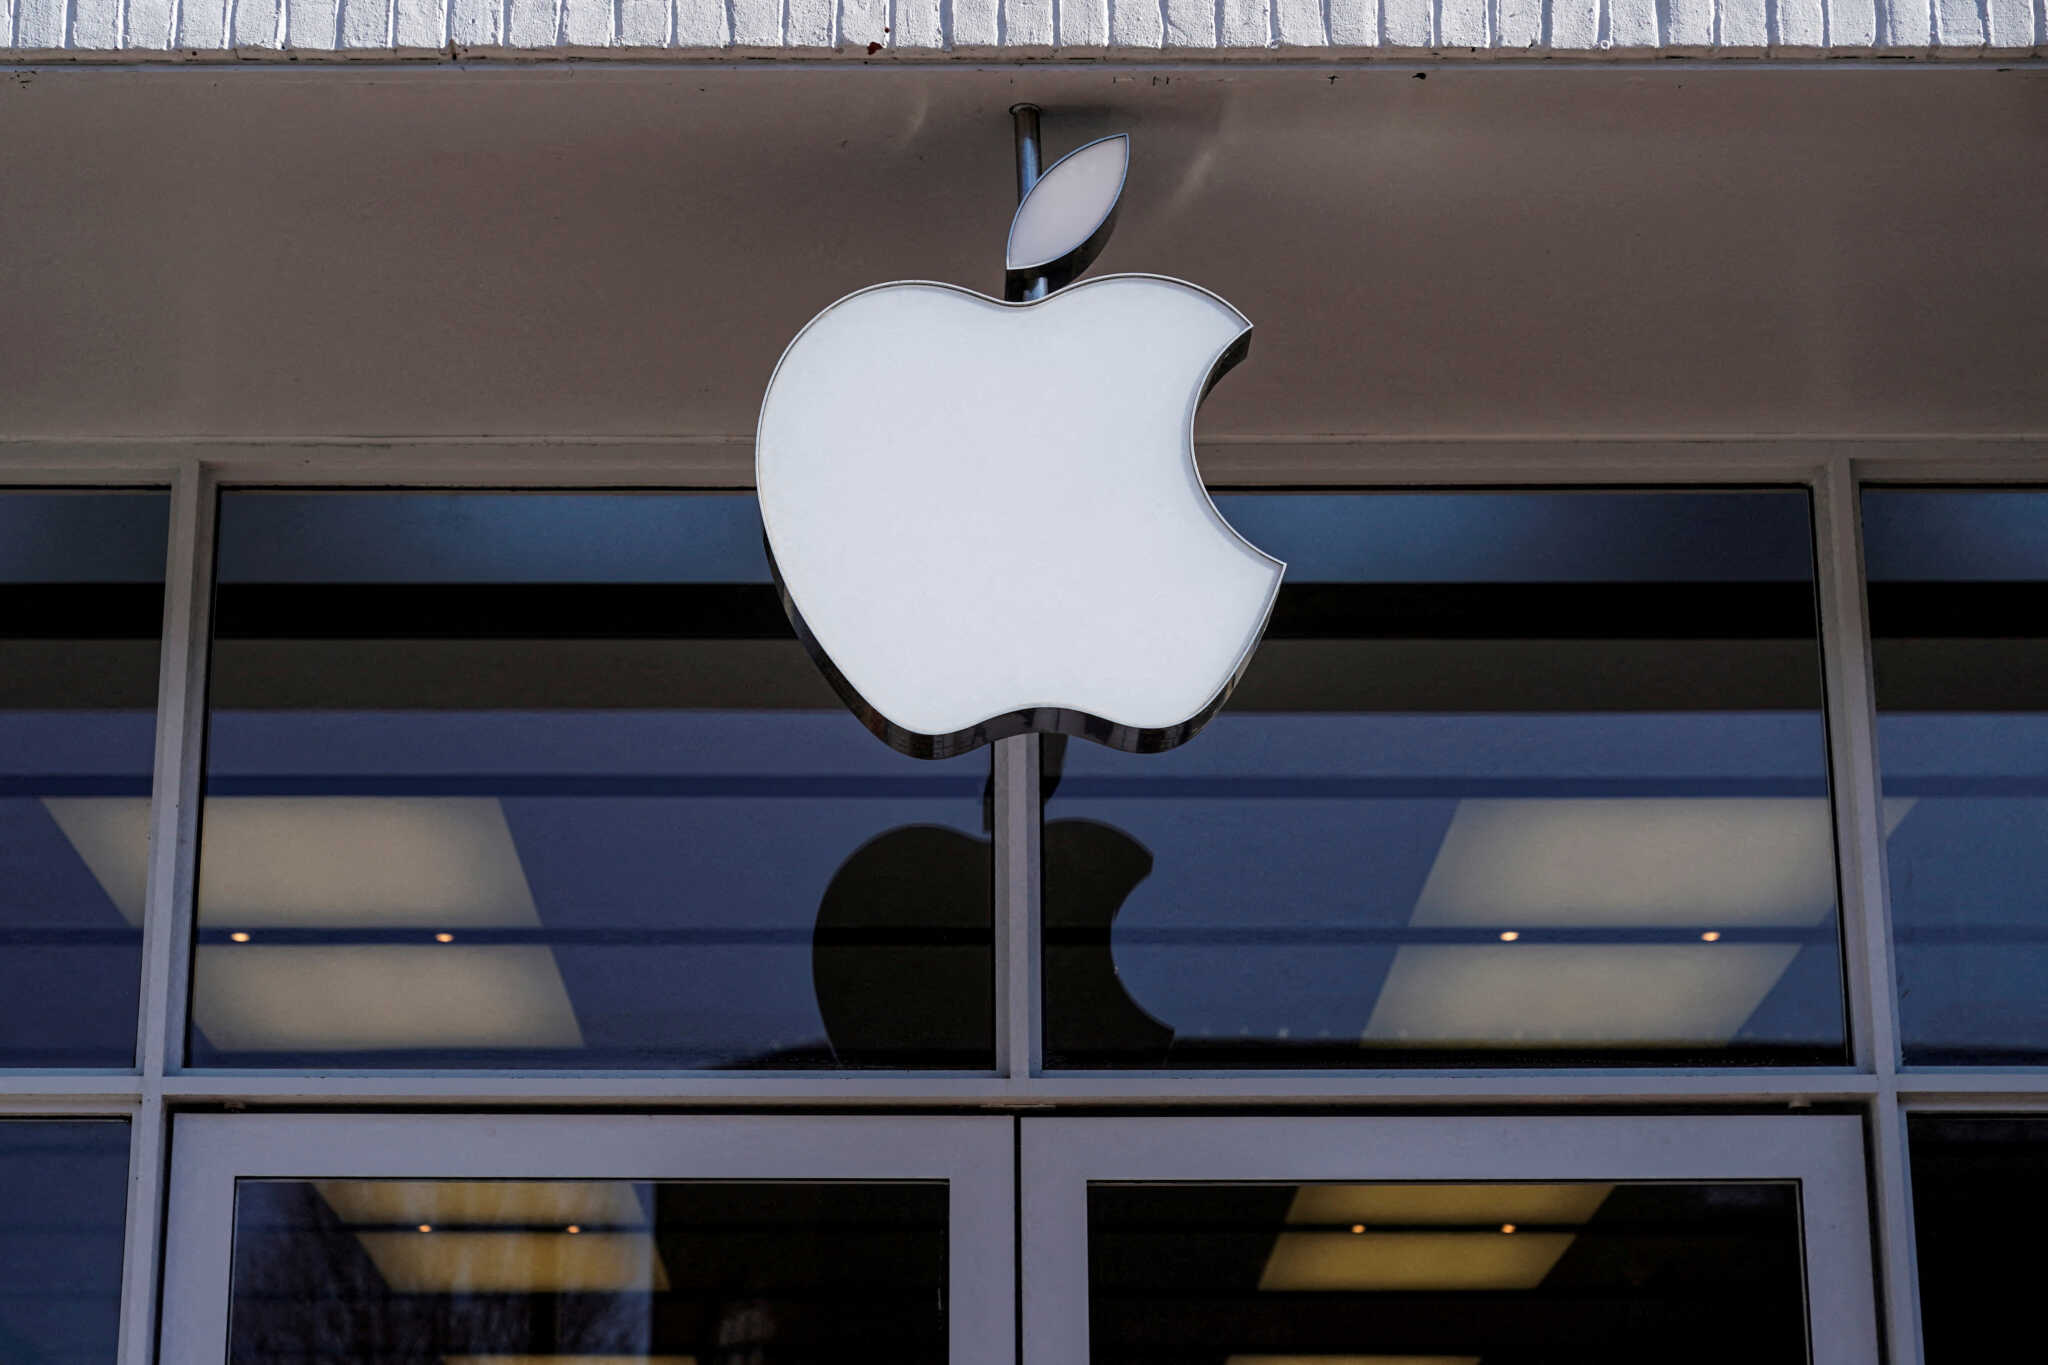 Οι ΗΠΑ προσφεύγουν κατά της Apple για μονοπωλιακές πρακτικές με το iPhone